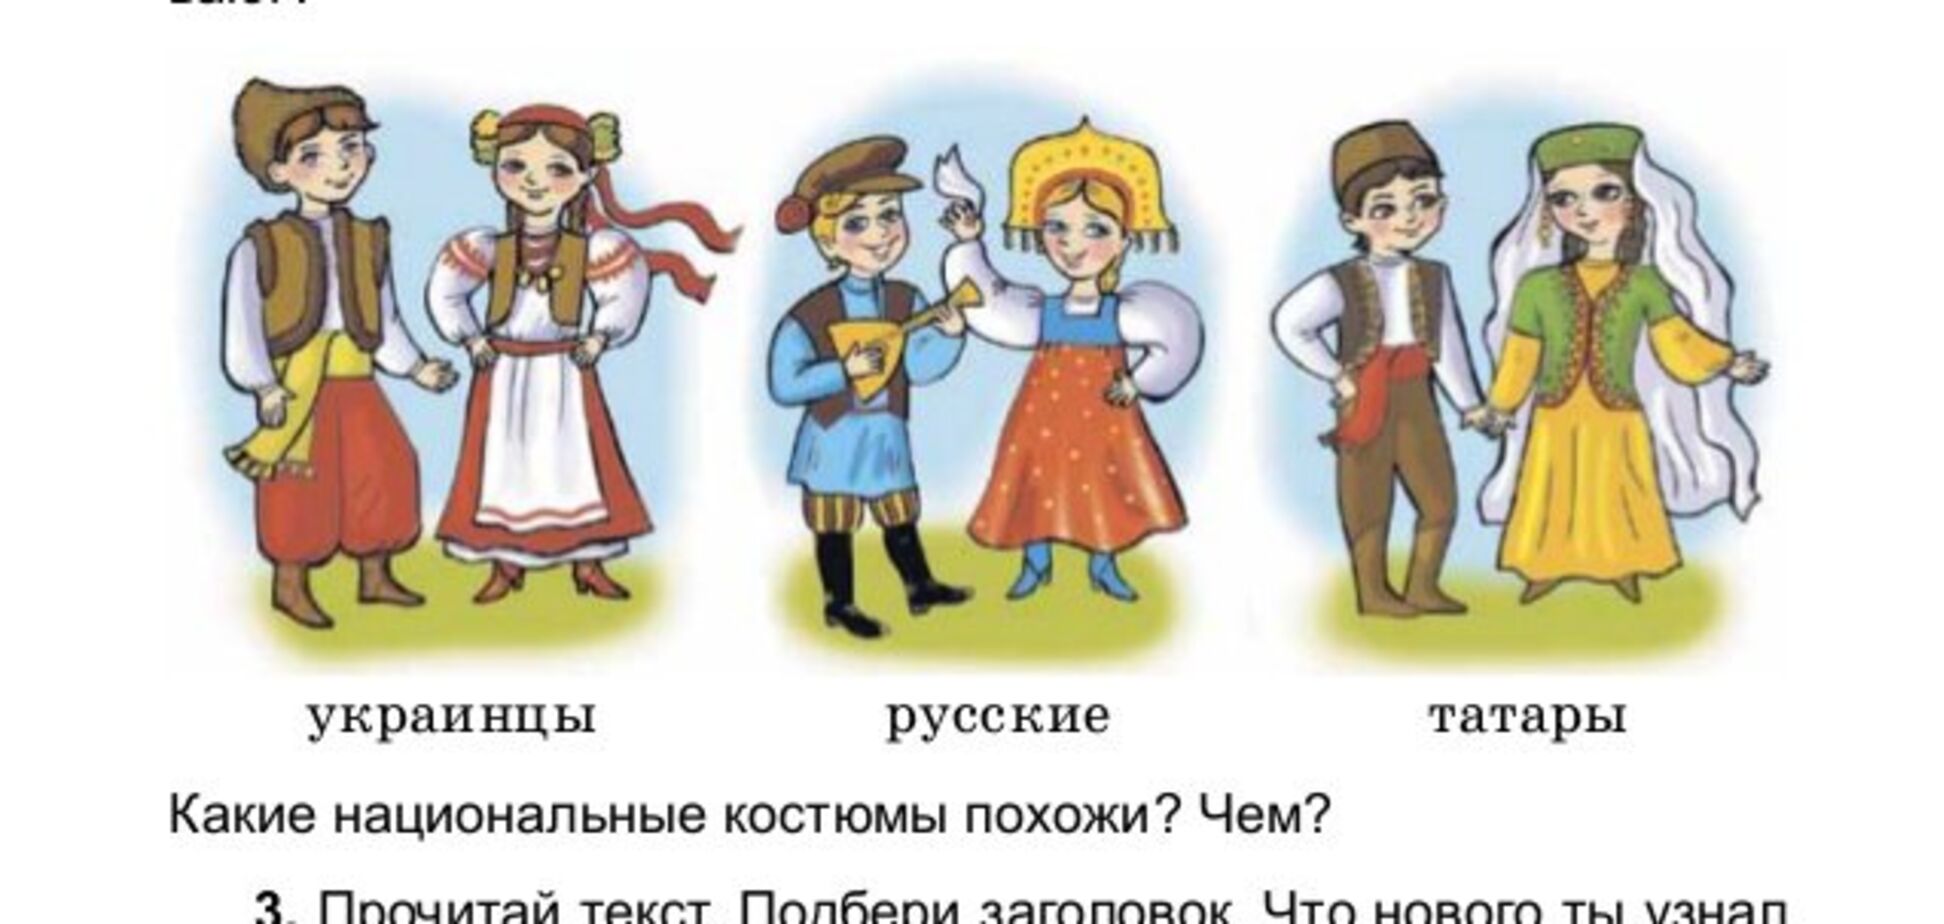 Растят 'в*ту' с детства: учебник украинских школьников возмутил сеть